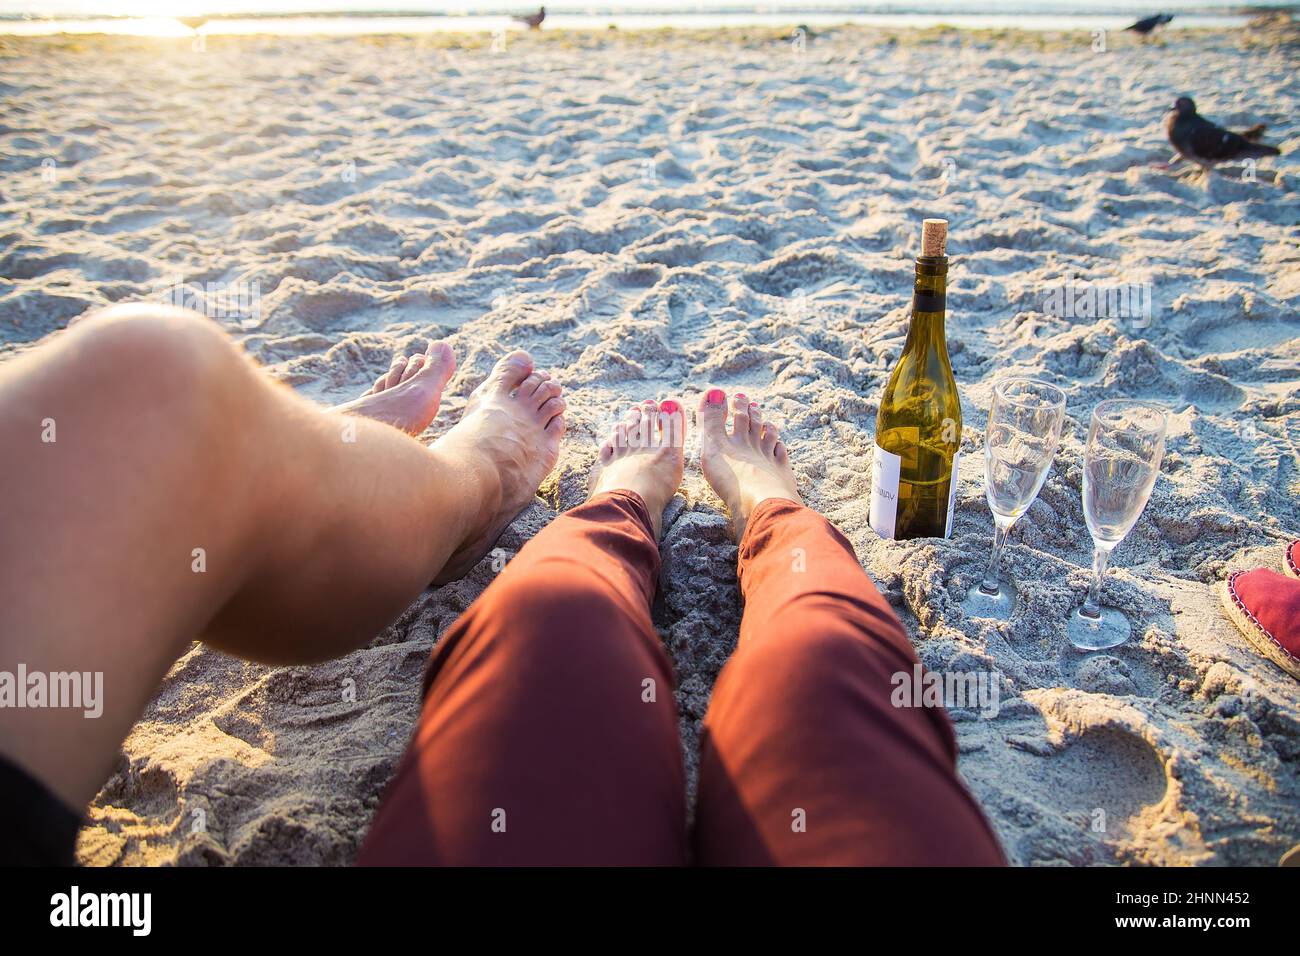 Bonne paire de jambes élégantes sur la plage, bains de soleil, vin Banque D'Images